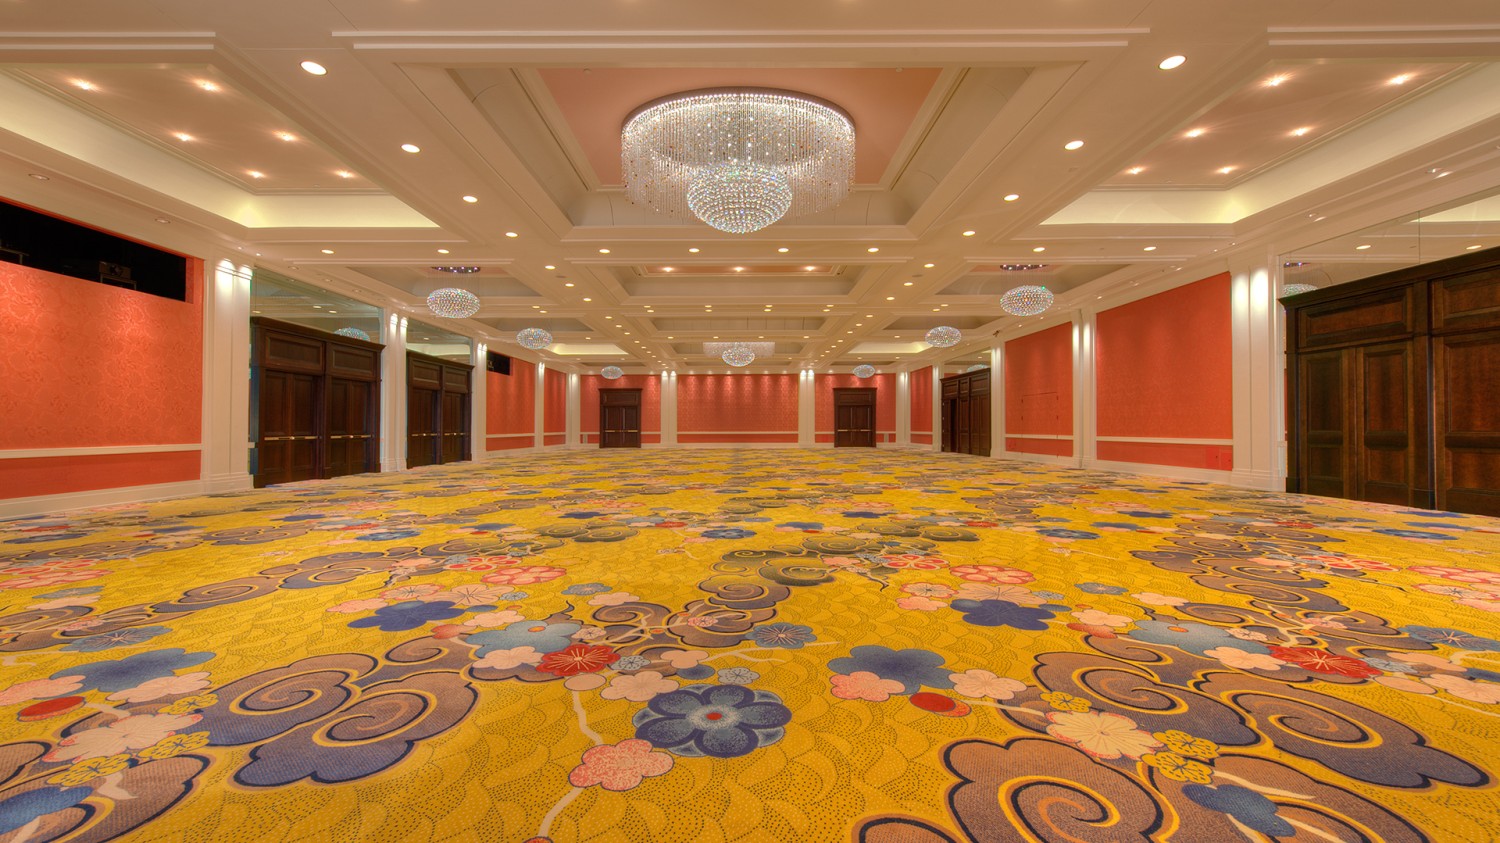 Amway Grand_Ambassador Ballroom_Ballroom_Meeting Room_Event Space_Empty_Chandeliers_Doors